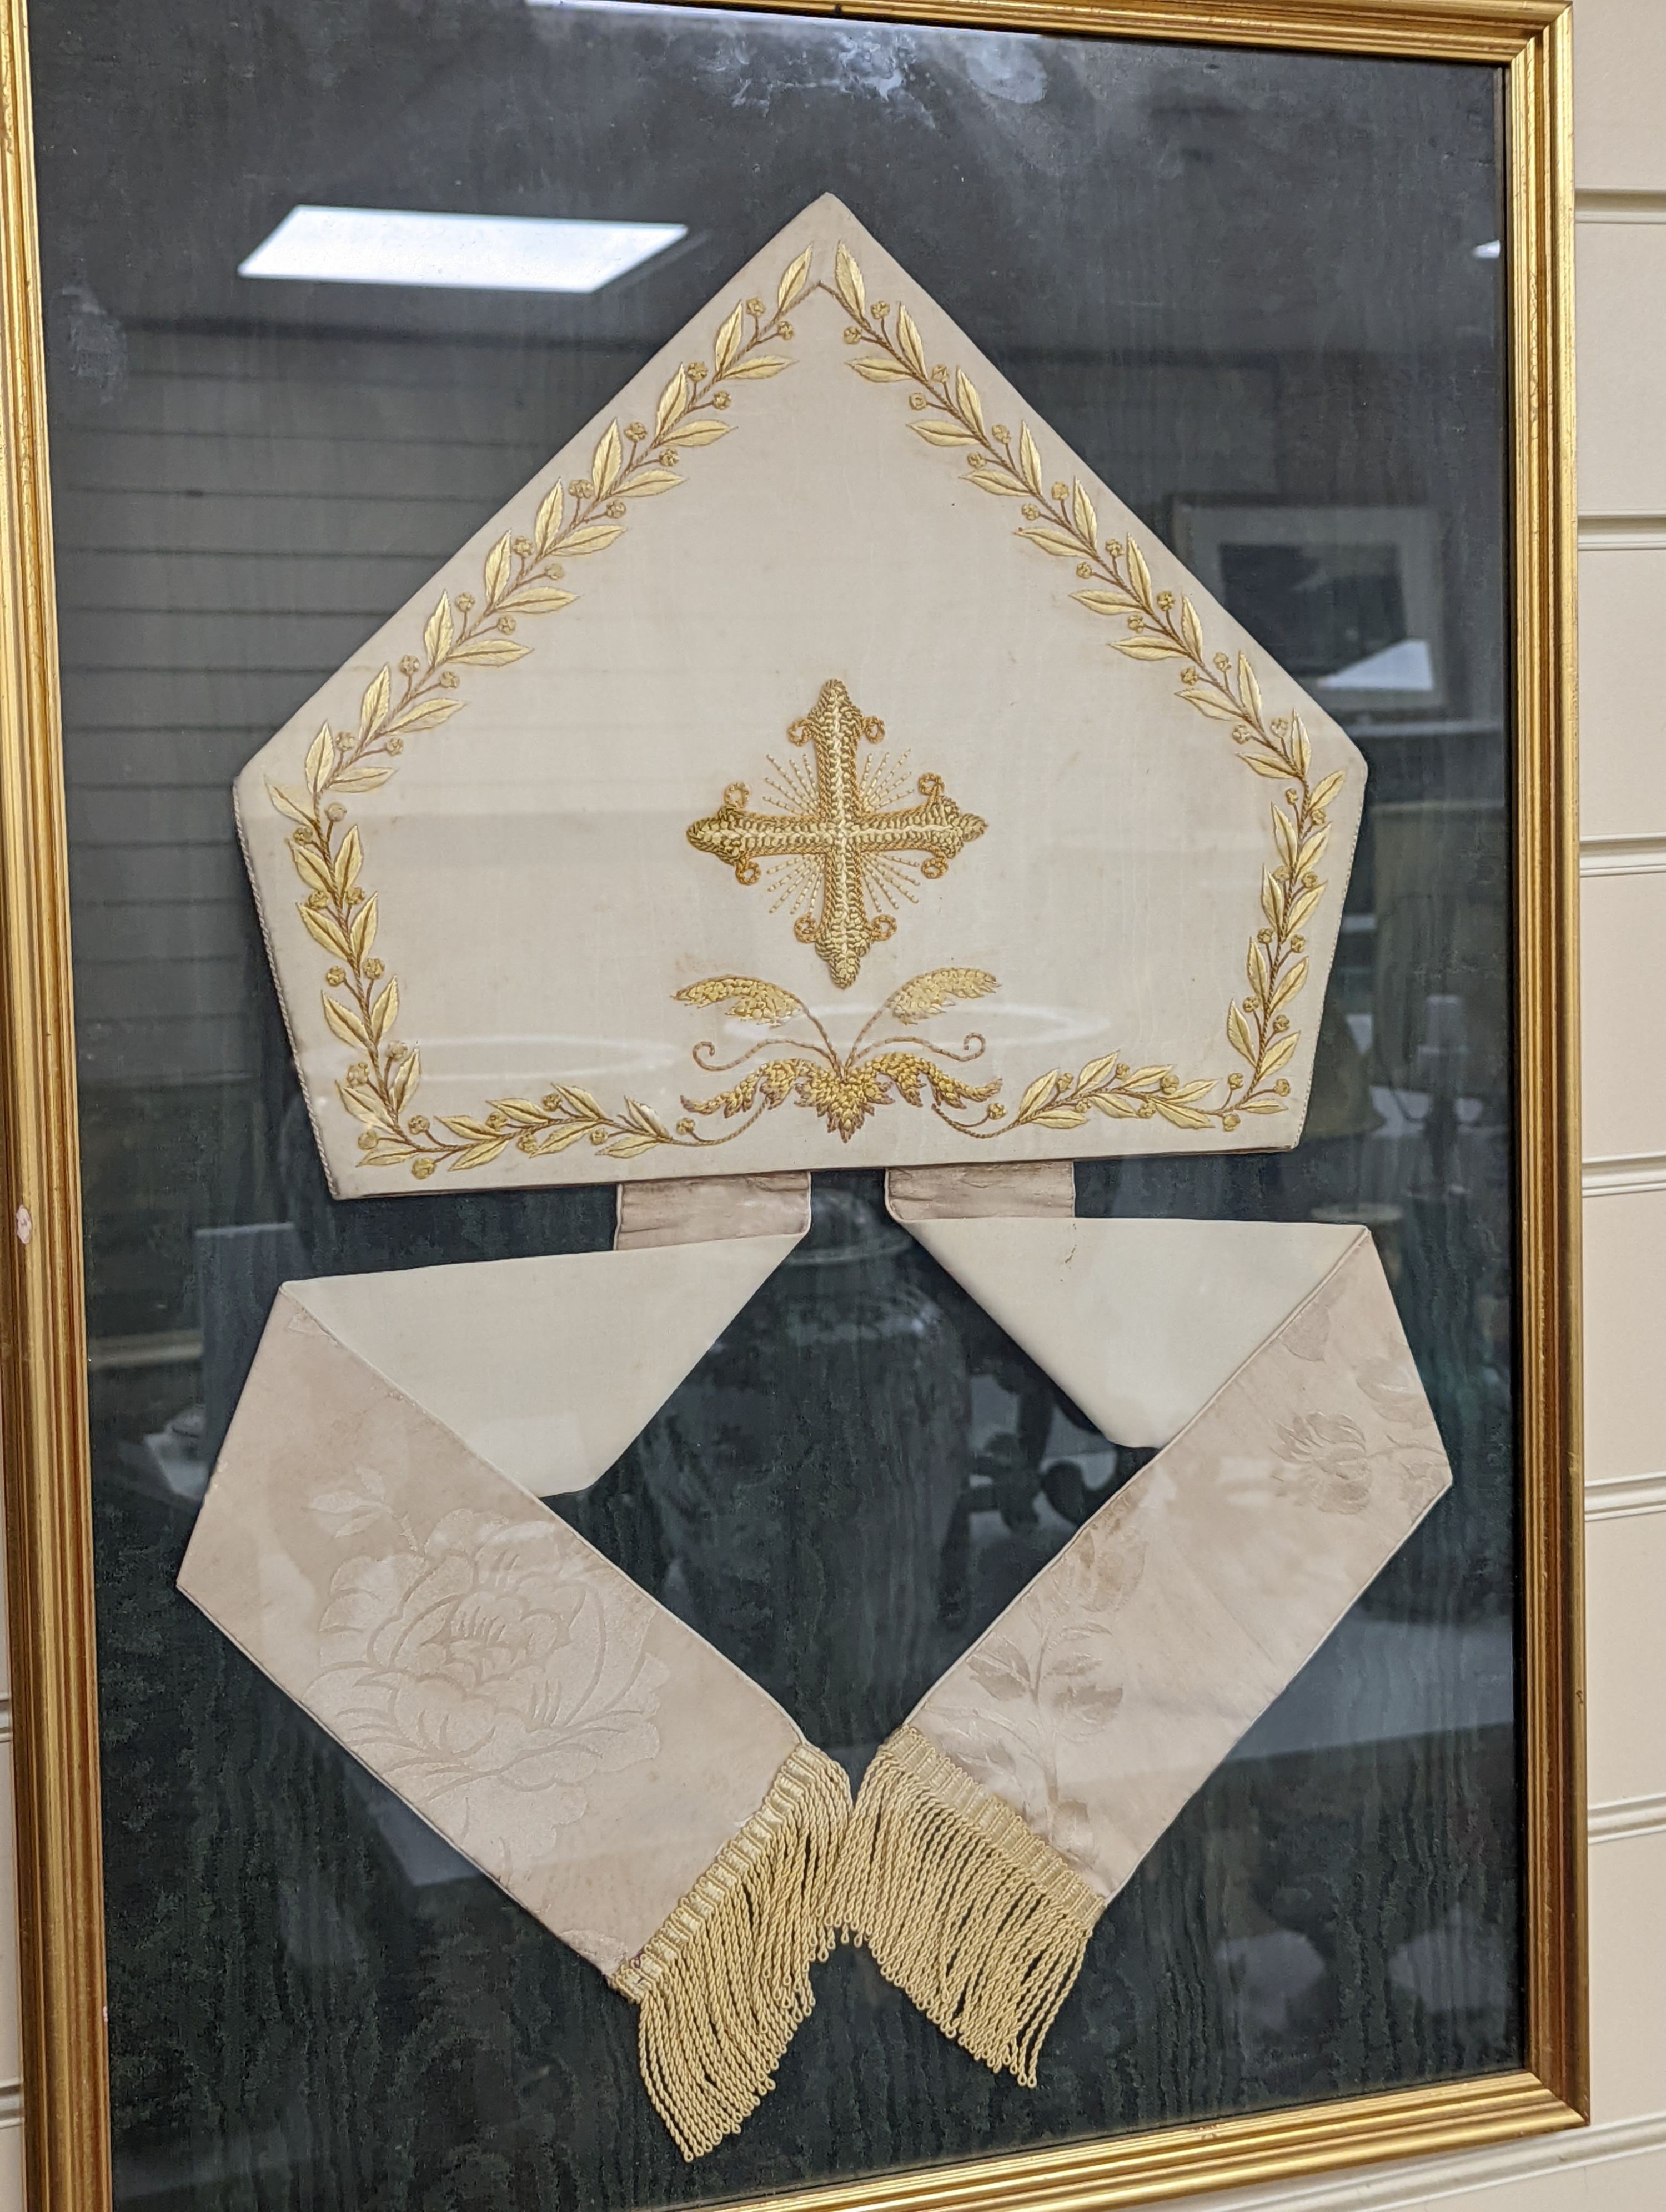 A framed bishop's mitre